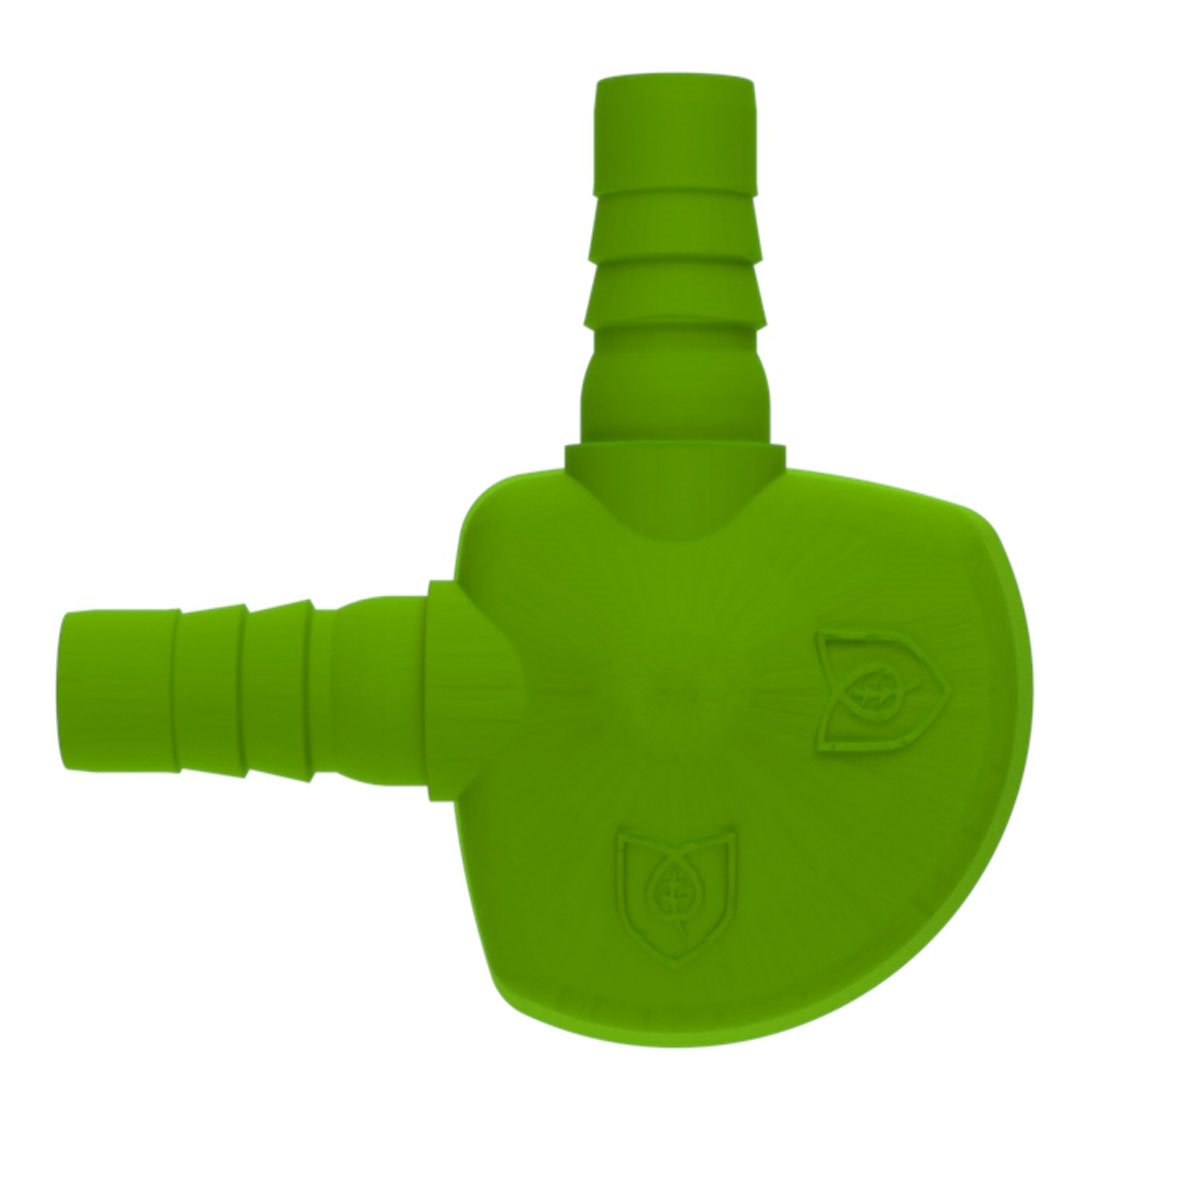 Product Secondary Image:Coude de drainage de plate-forme FloraFlex (12 - Pk)